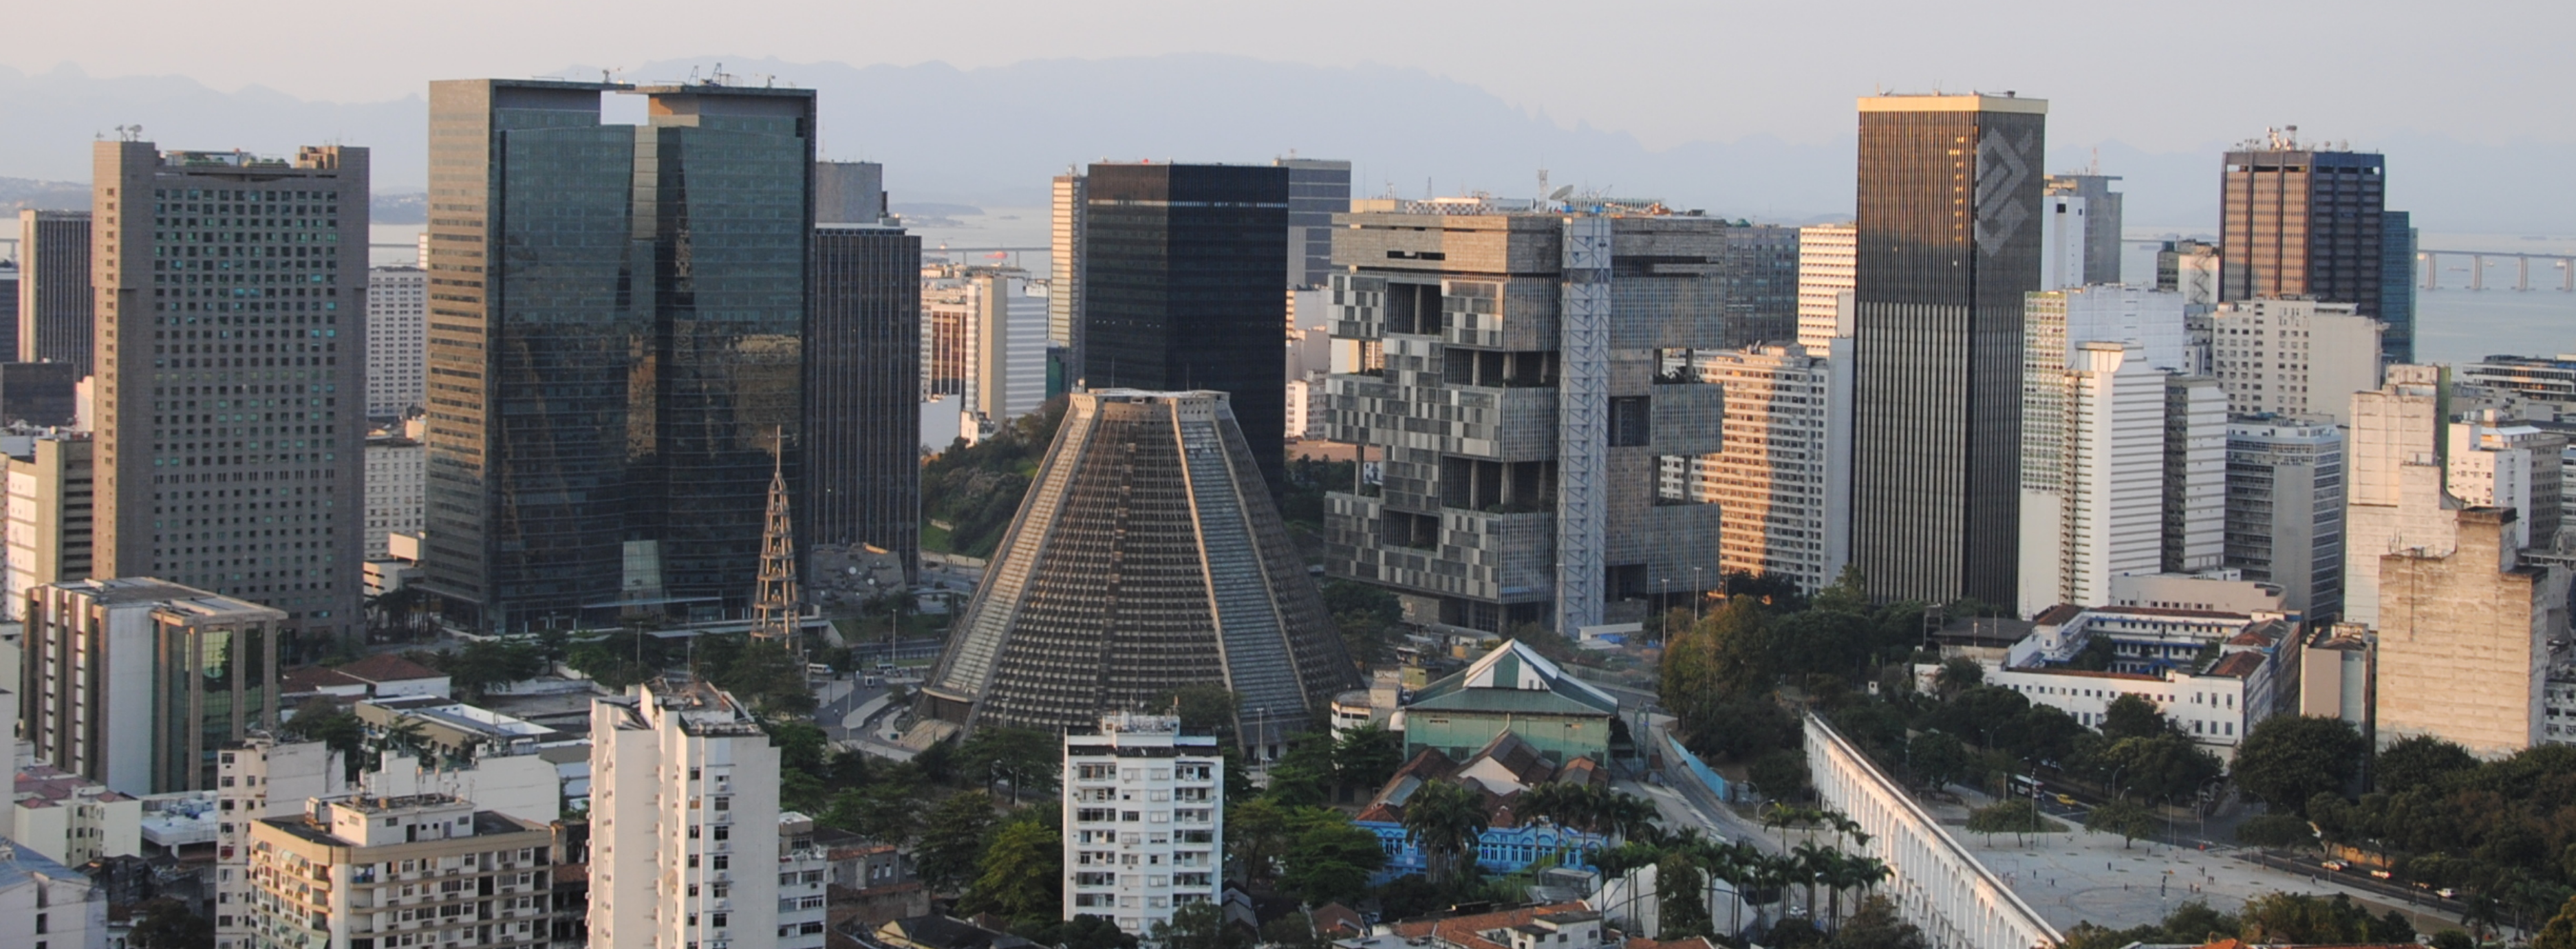 Vista panoramica do Centro do Rio de Janeiro